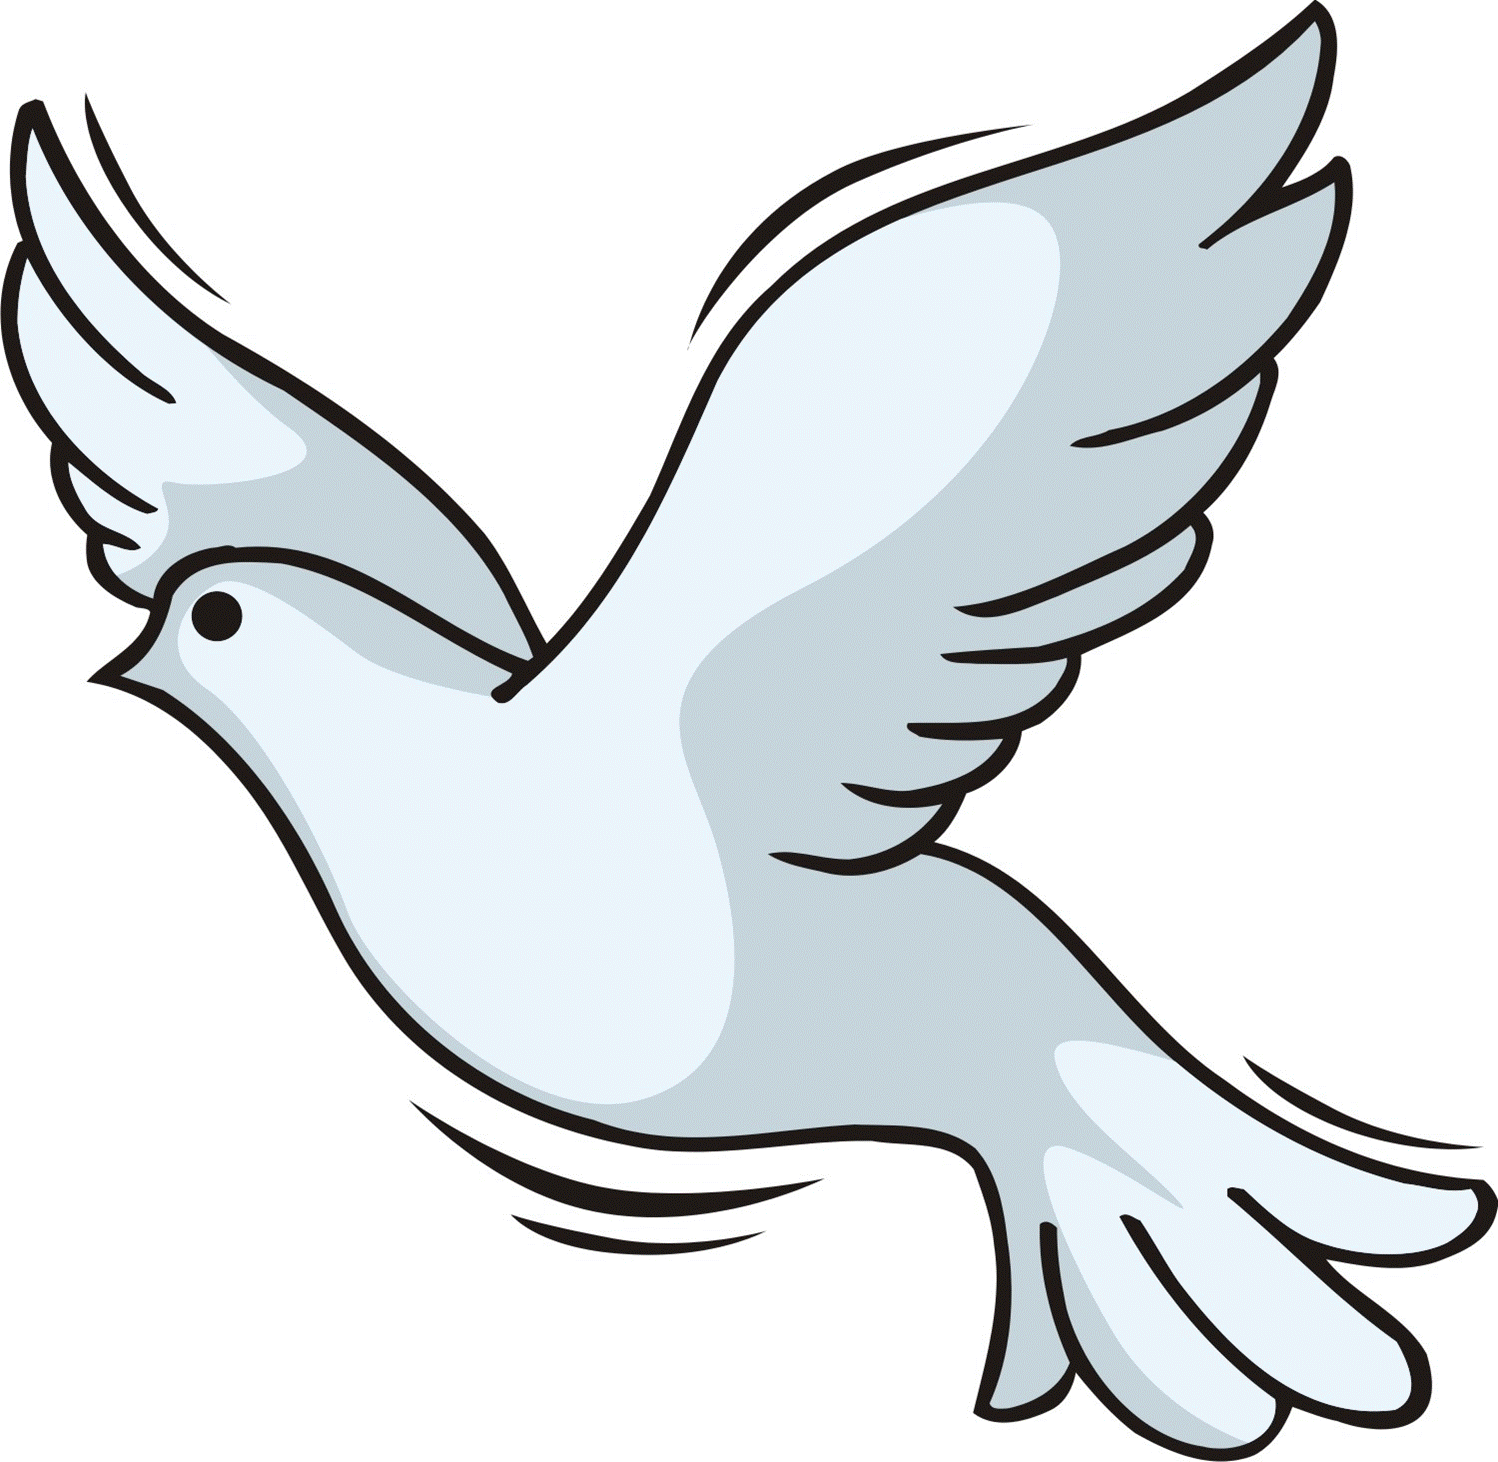 Christian holy spirit dove clip art dayasriod top